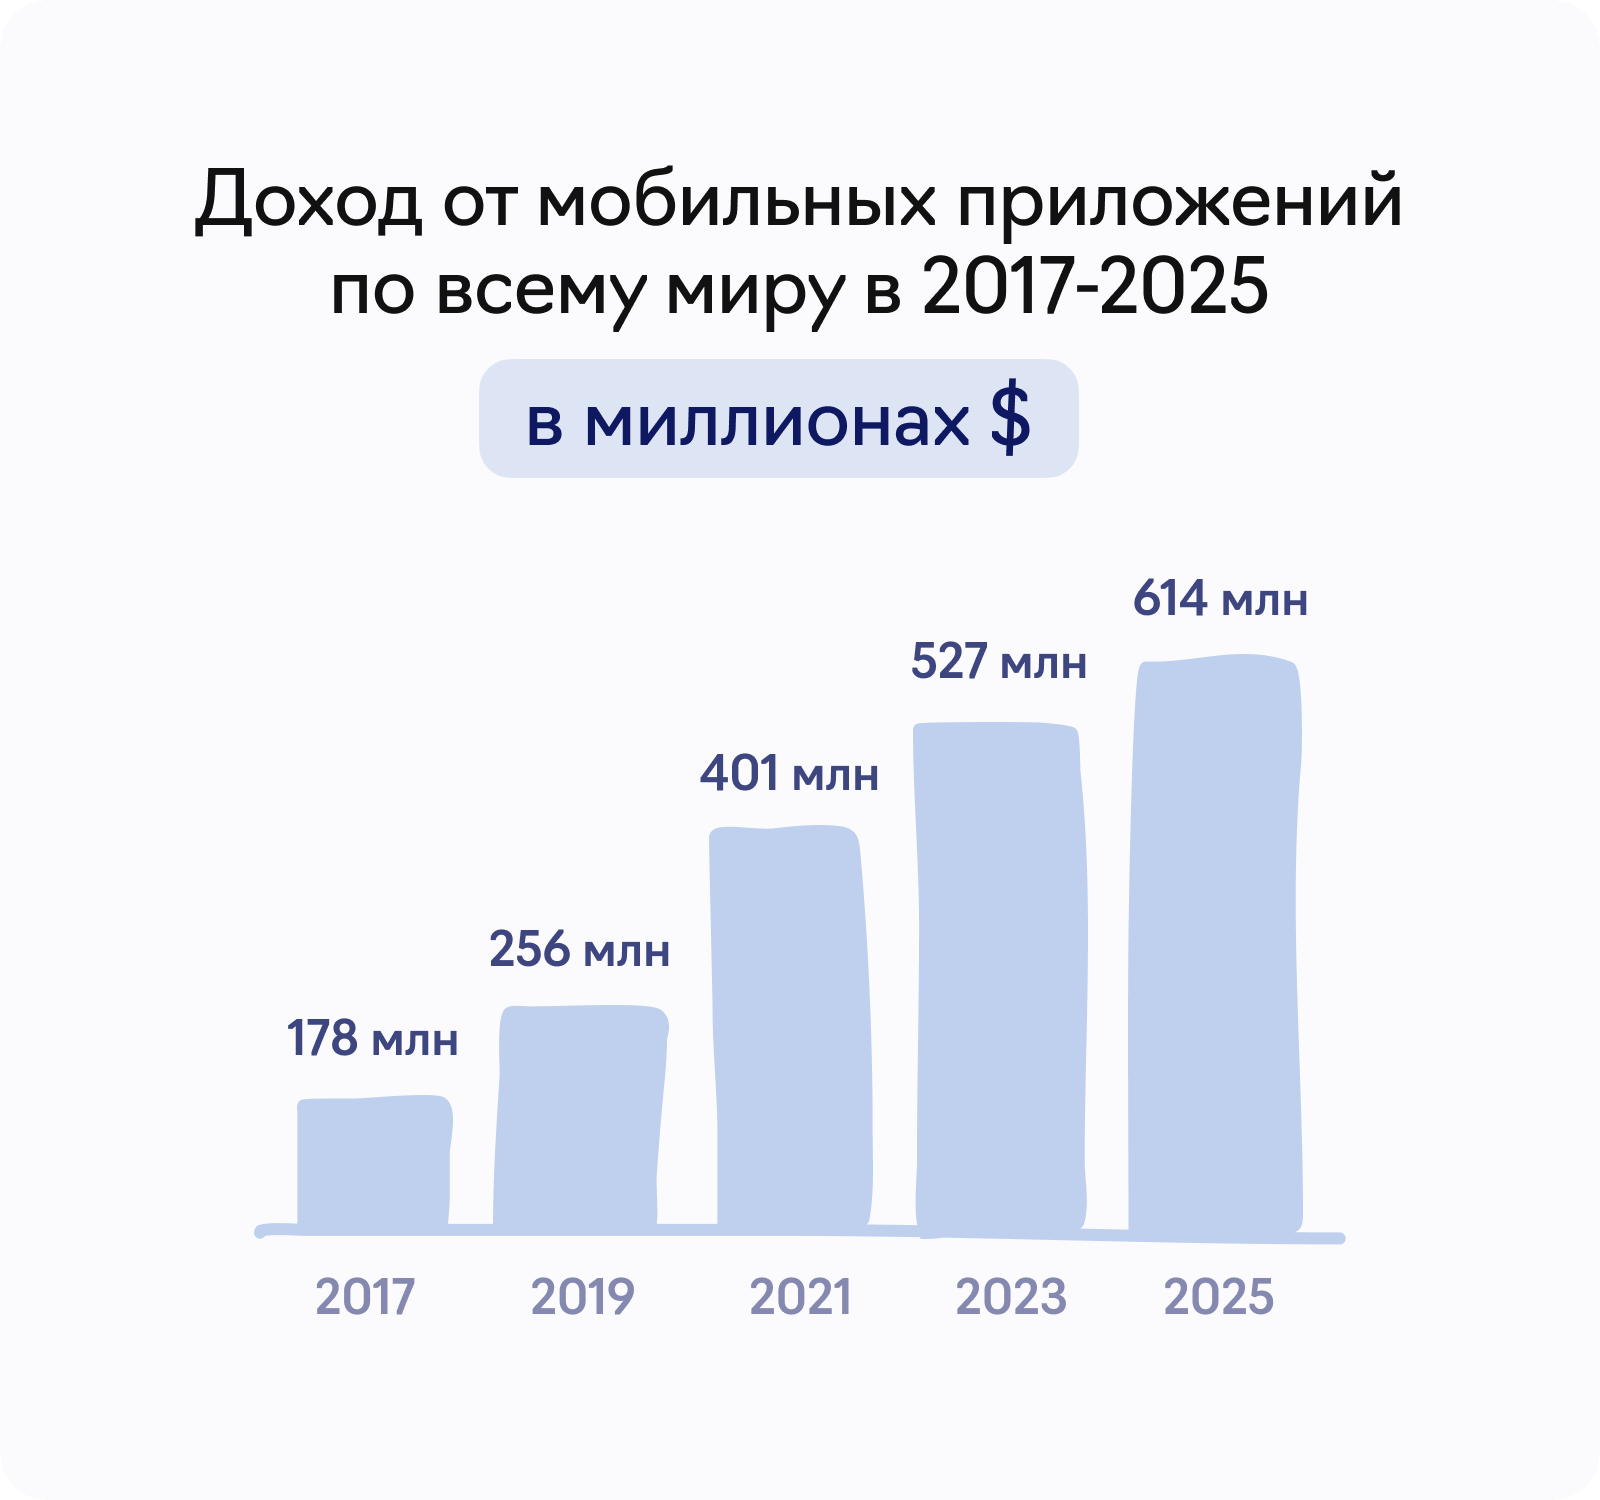 Доход от мобильных приложений по всему миру 2017-2025